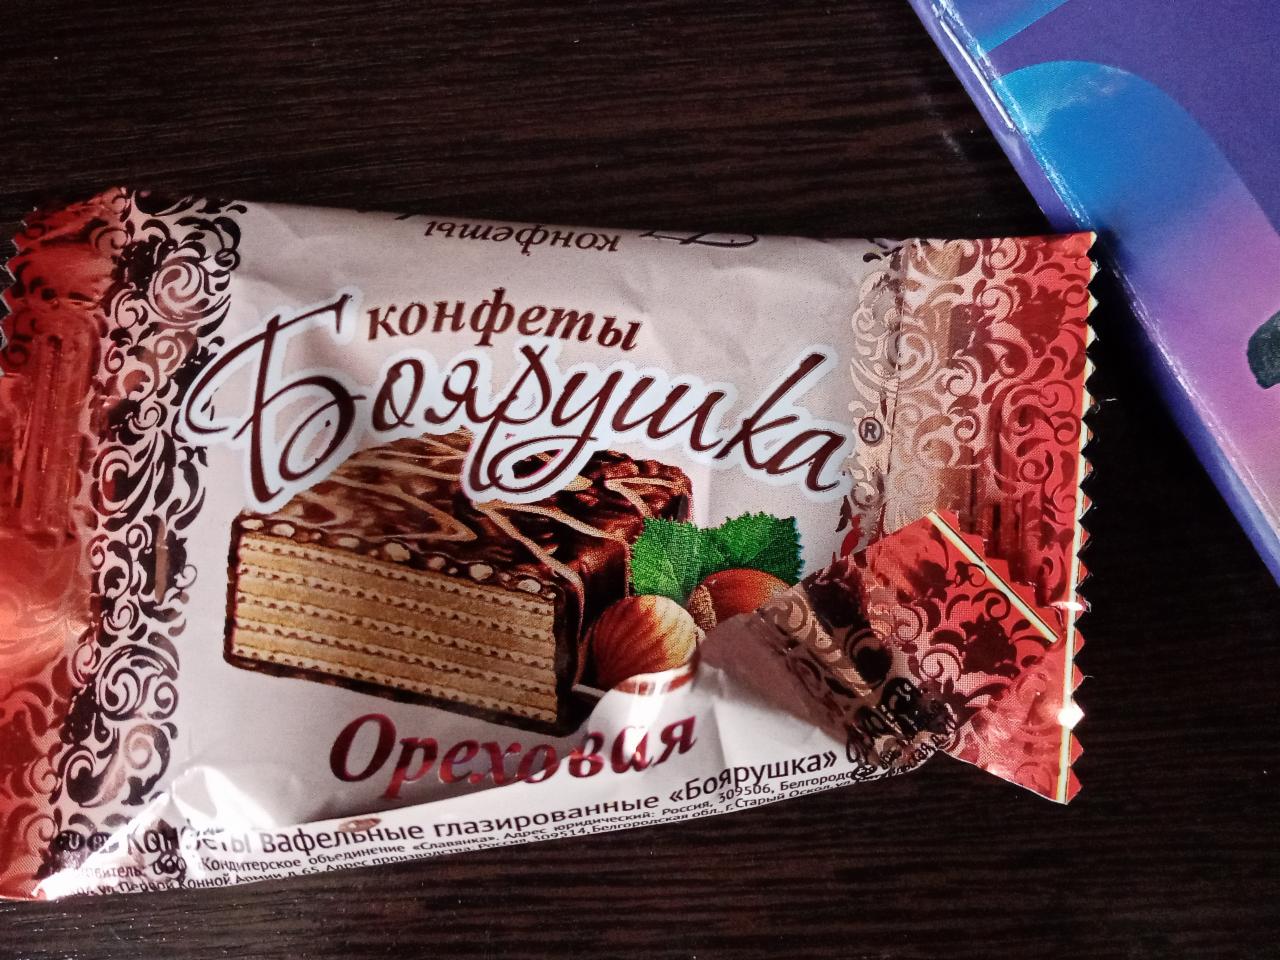 Фото - конфеты ореховая Боярушка Славянка